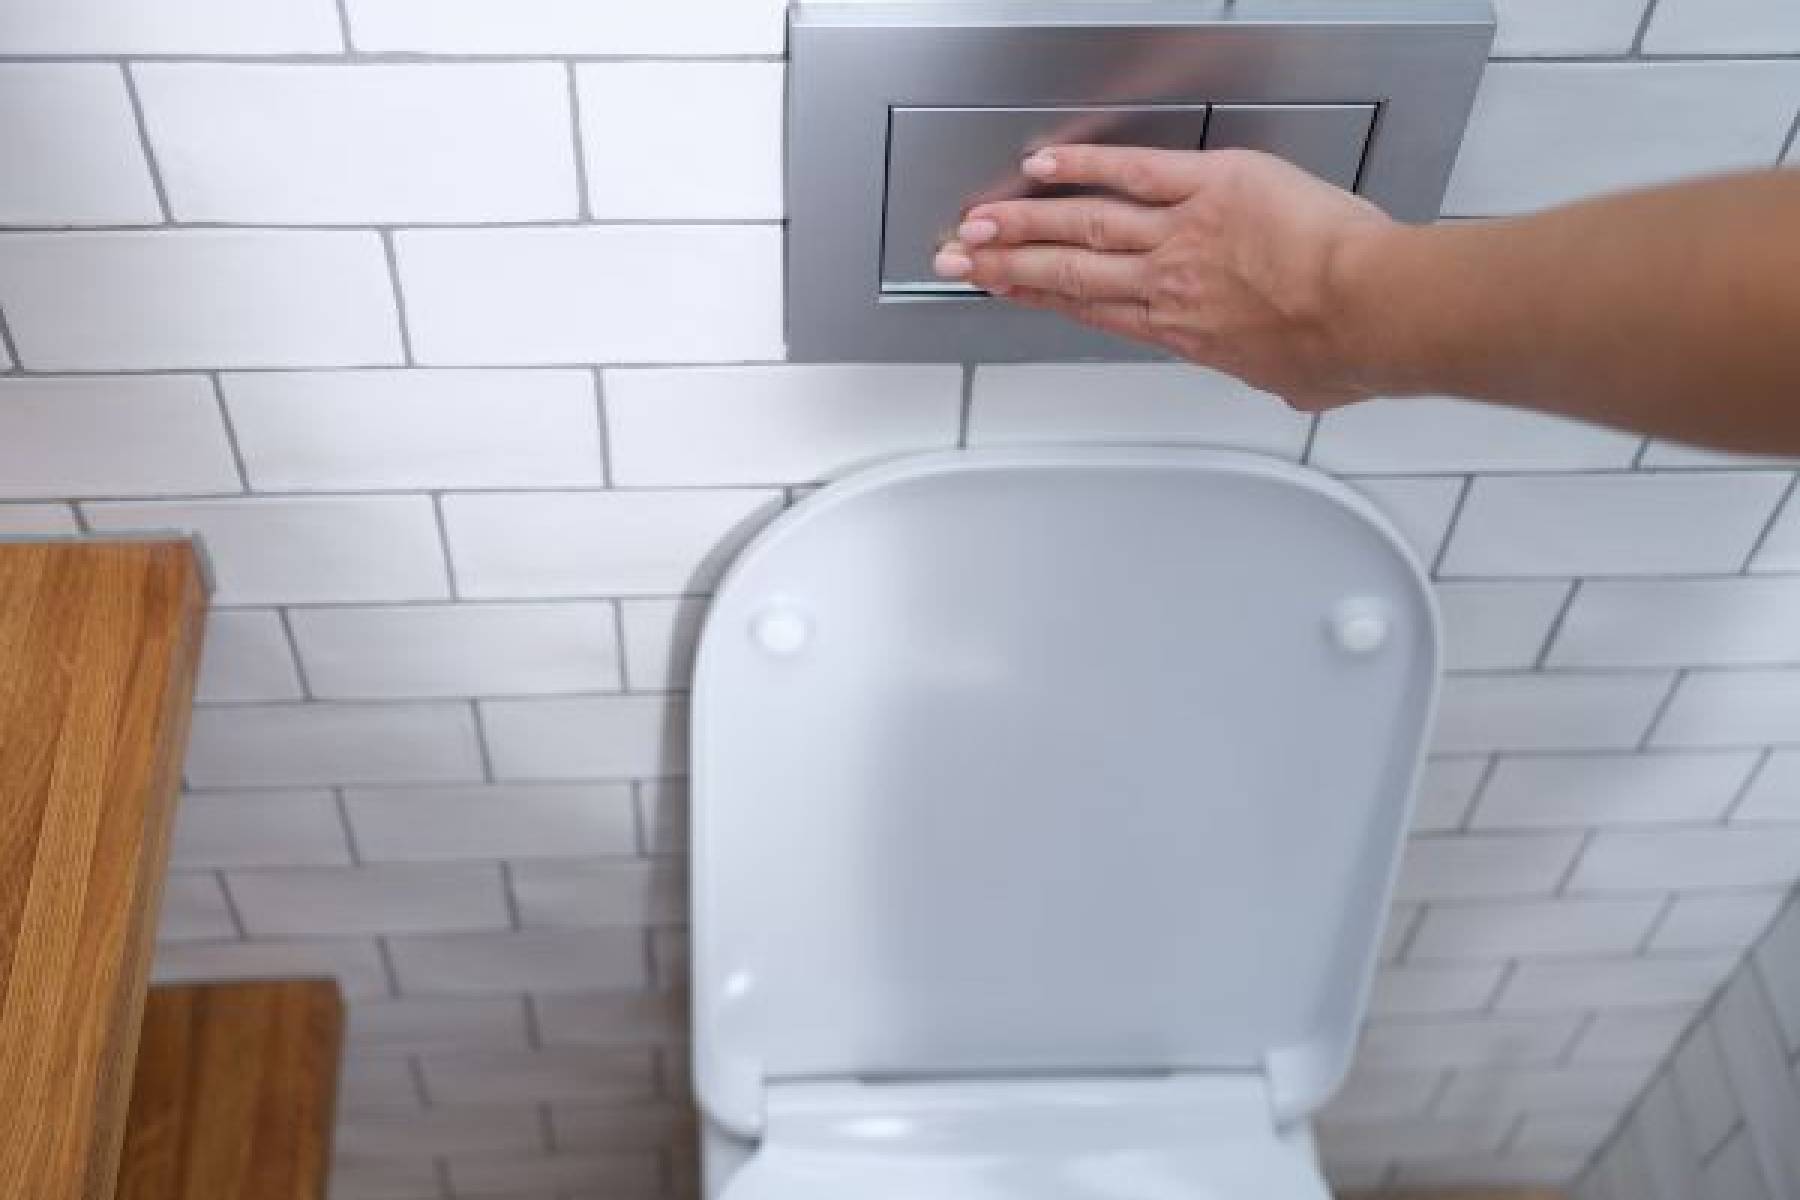 Stelaż WC - Innowacyjne rozwiązania dla nowoczesnej łazienki